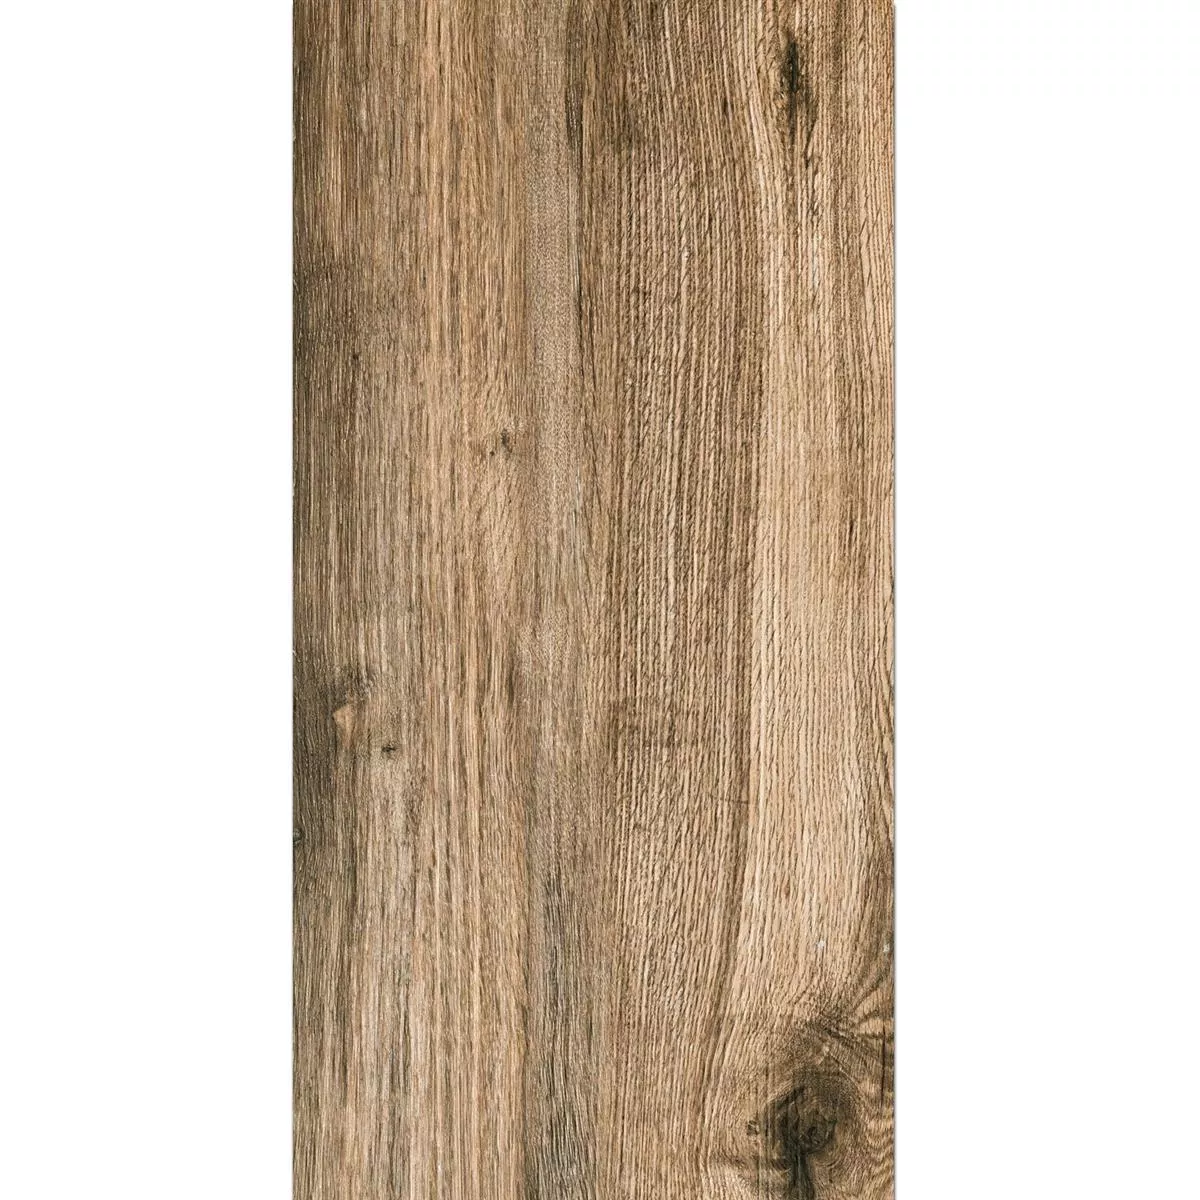 Muster Terrassenplatten Starwood Holzoptik Oak 45x90cm